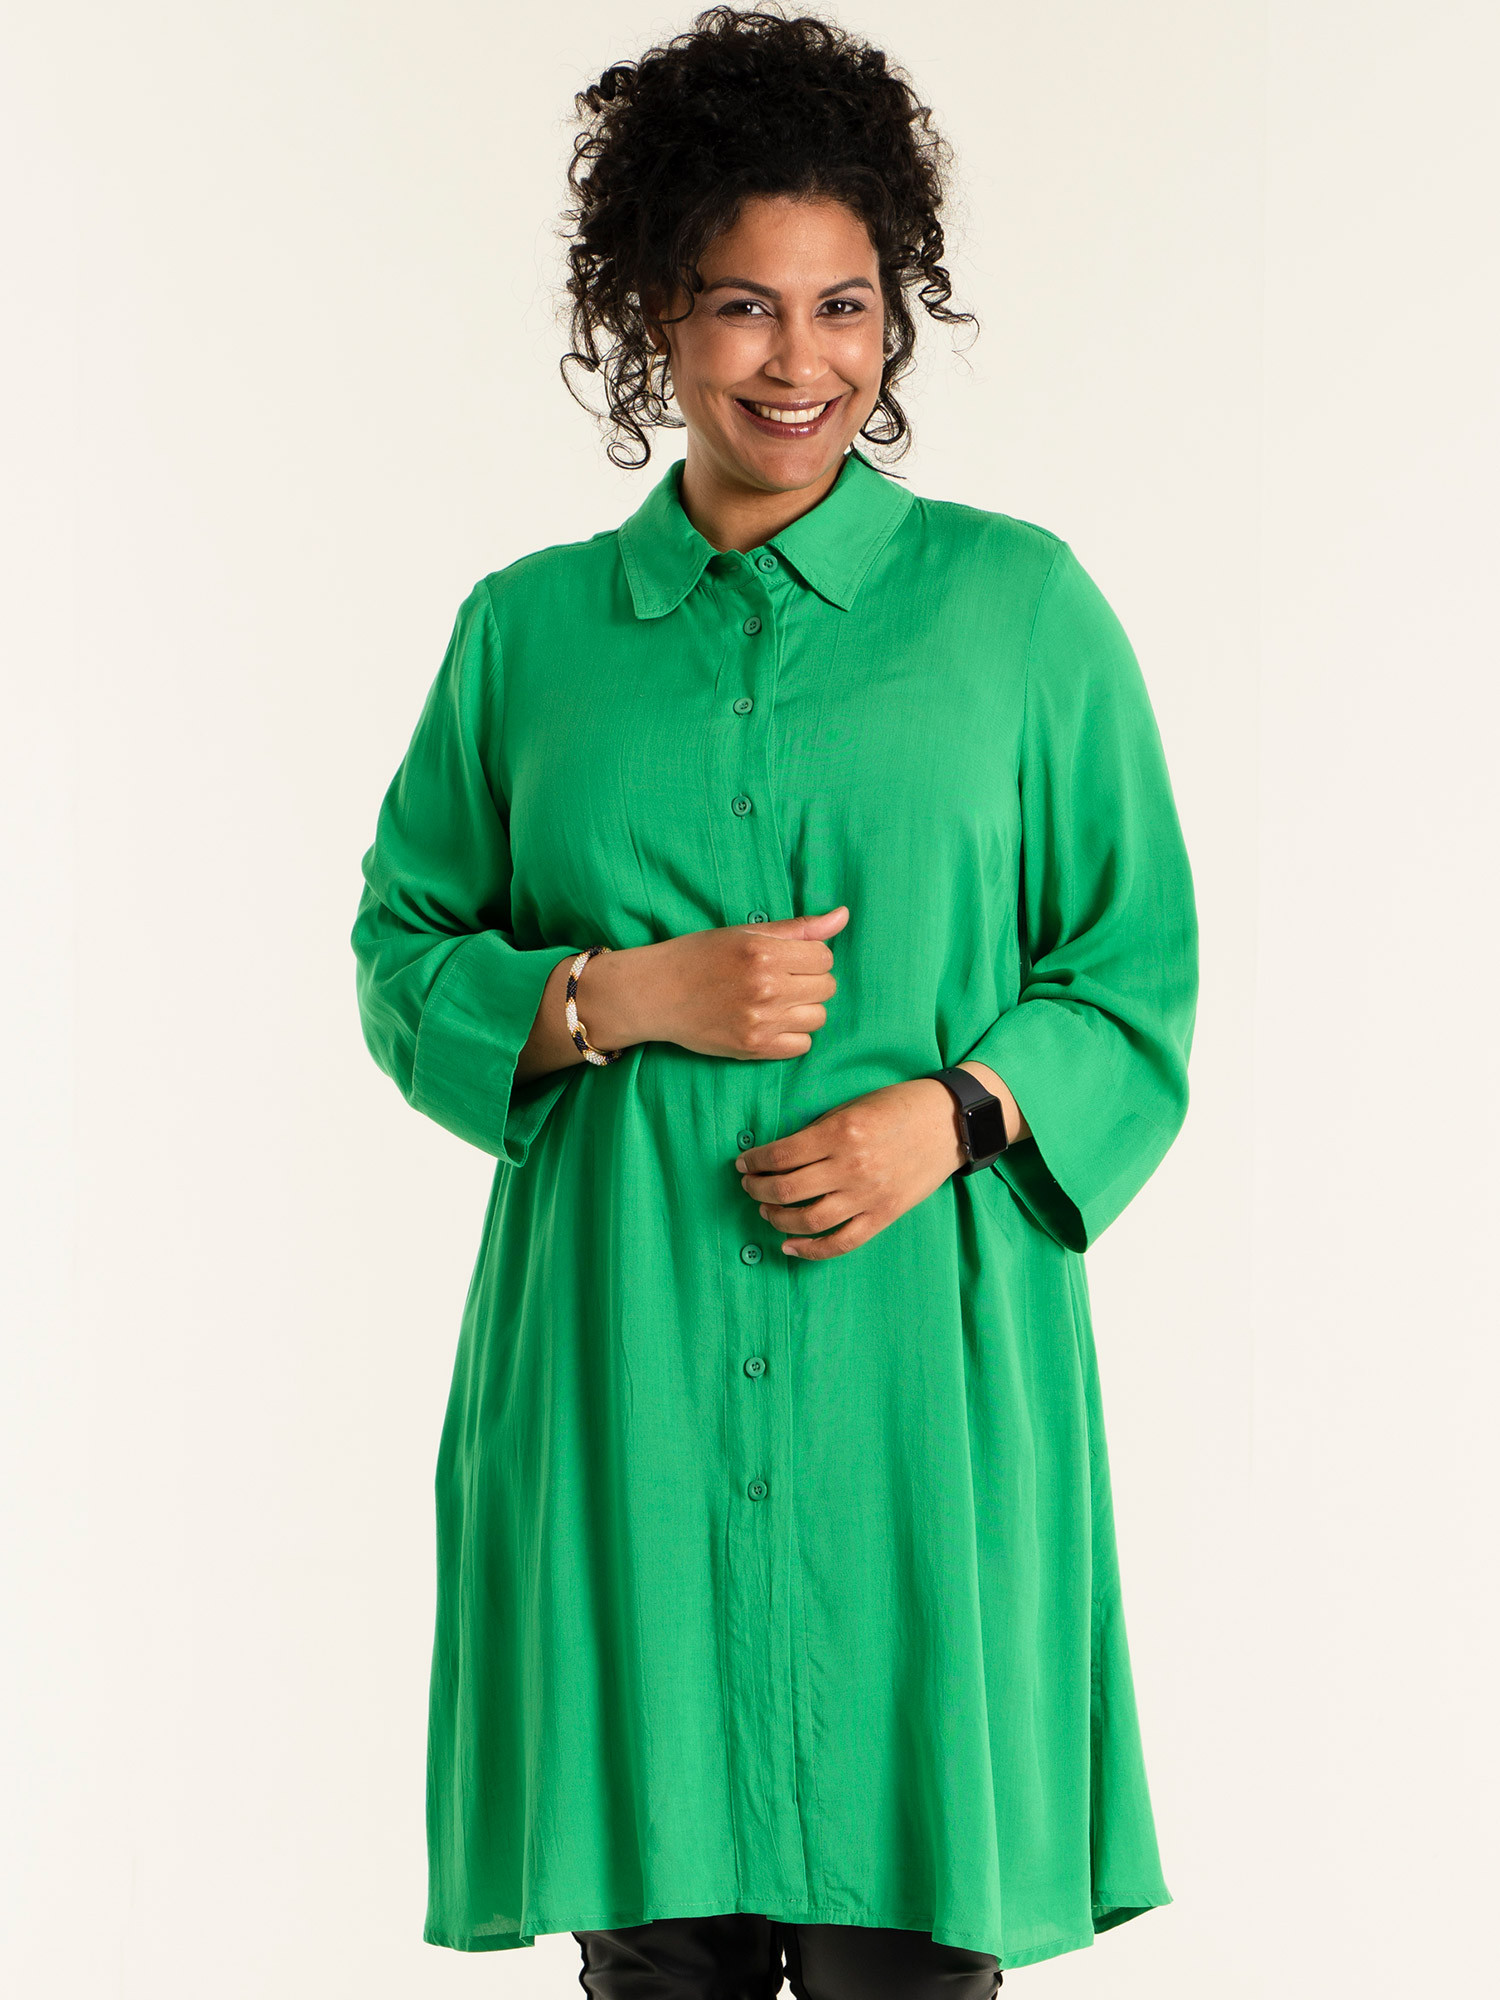 JOAN - Svart klänning i kraftig kvalitet med gröna detaljer